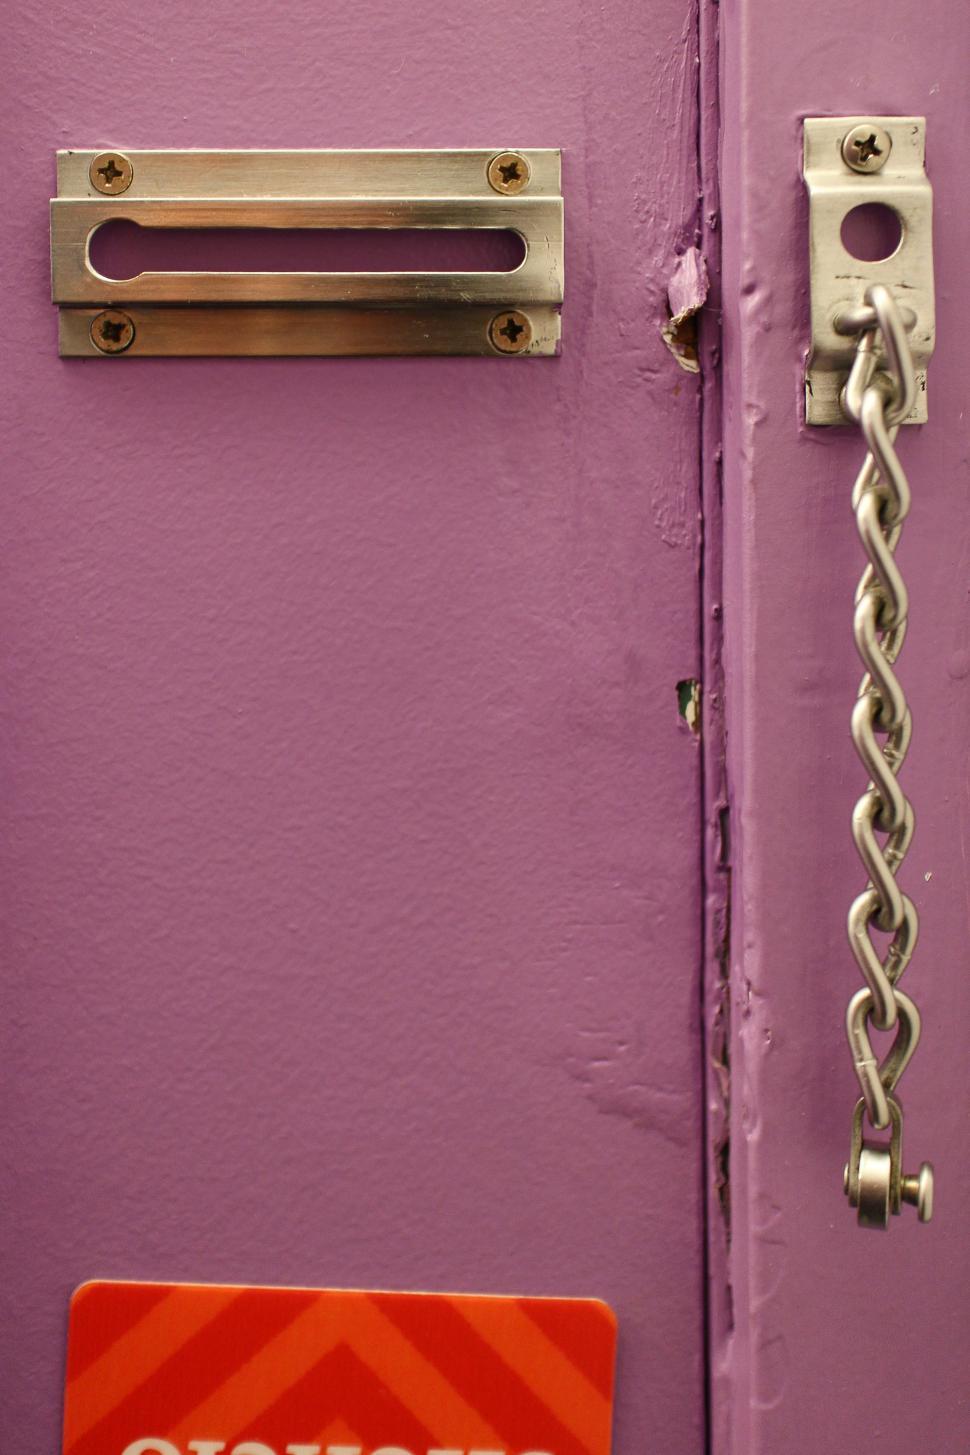 Free Image of Opened Chain Door Lock 